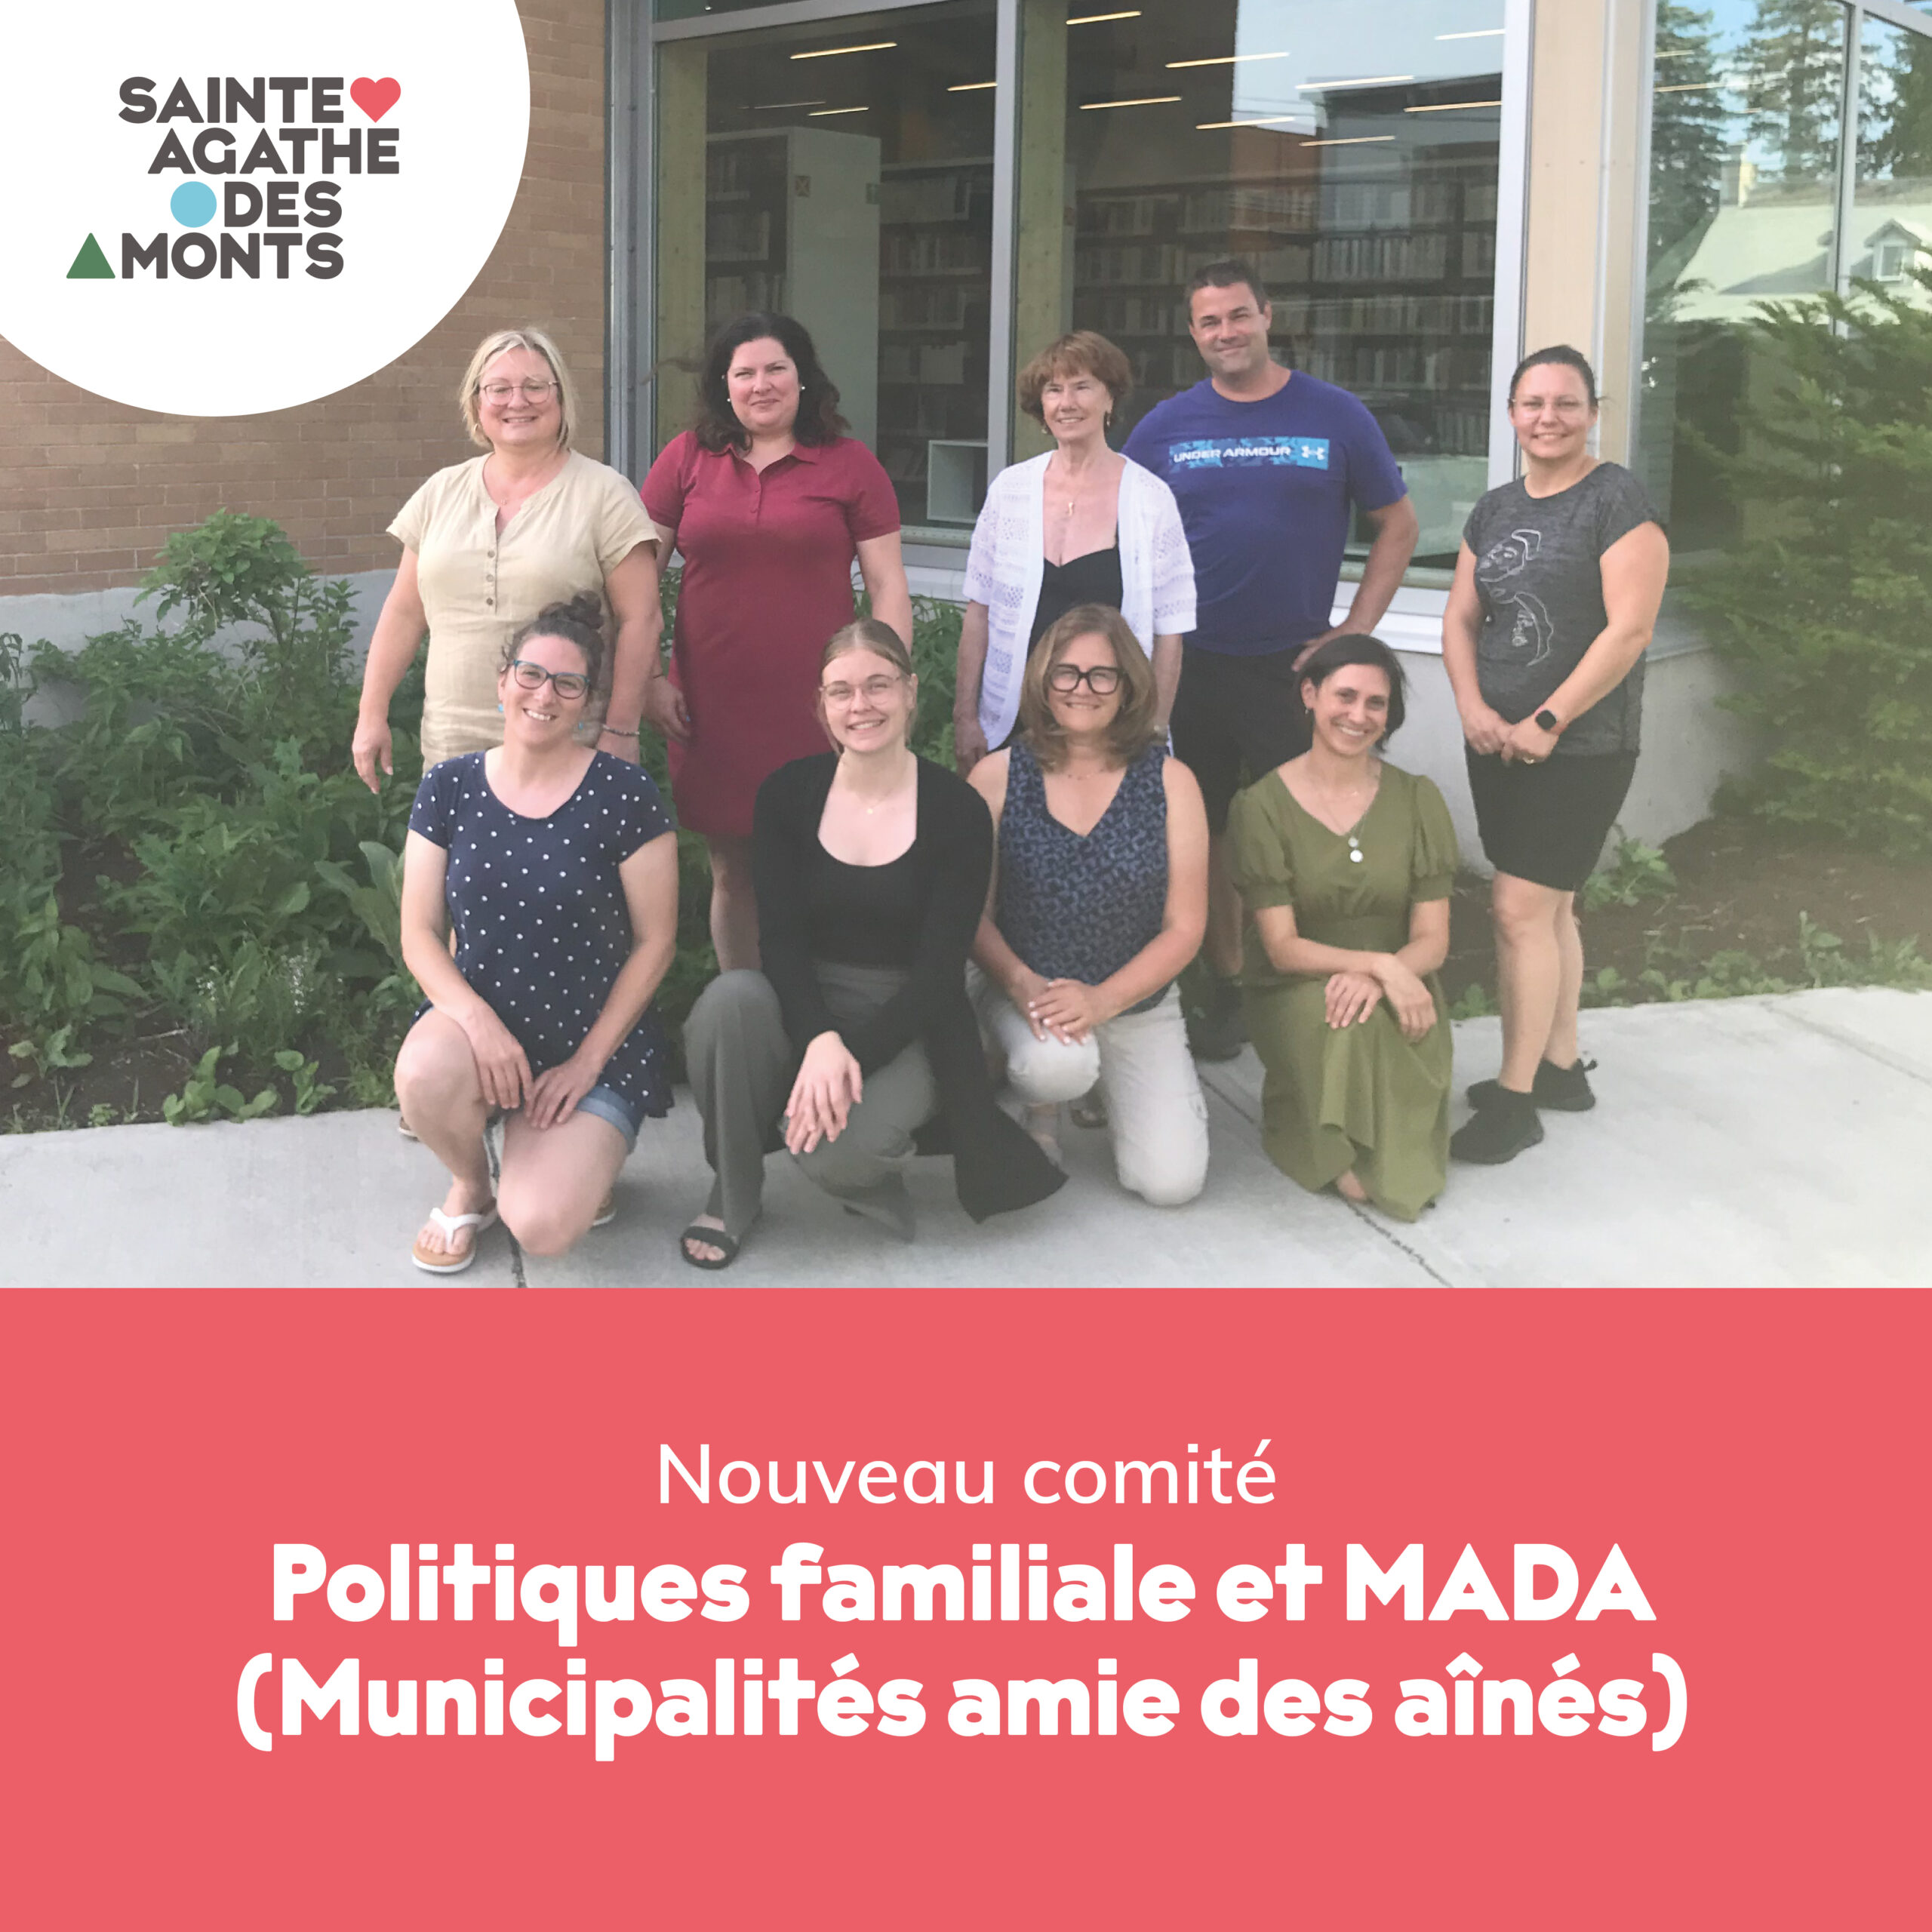 Nouveau comité à la Ville de Sainte-Agathe-des-Monts